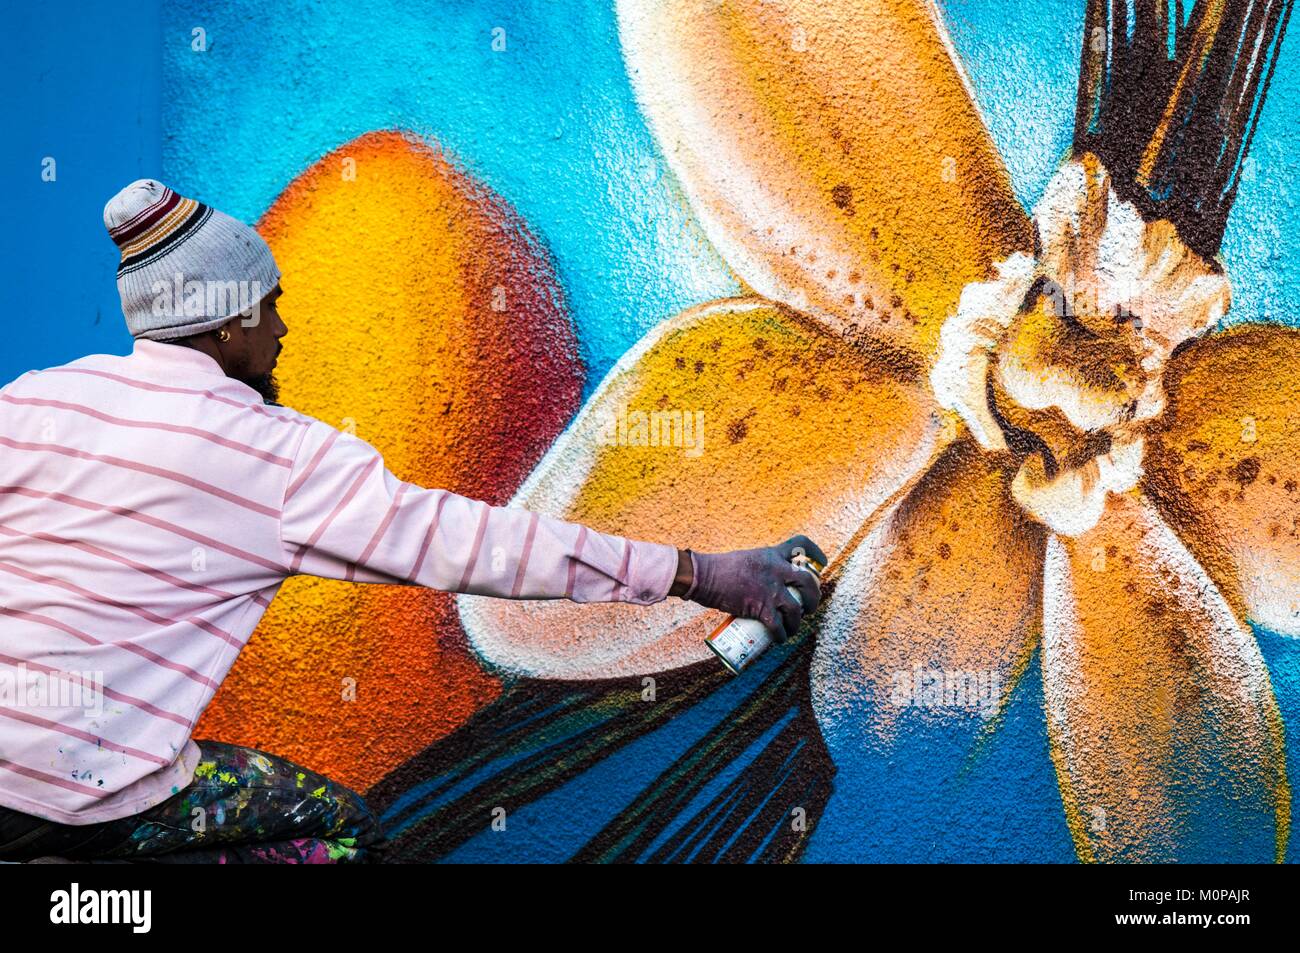 France,Caraïbes Petites Antilles, la Guadeloupe, Basse-Terre, Baie-Mahault, fresque naturaliste,artiste de rue de Jimmy SHEIKBOUDHOU représentant des fruits tropicaux et de vanille en fleur sur le mur d'un local technique Banque D'Images